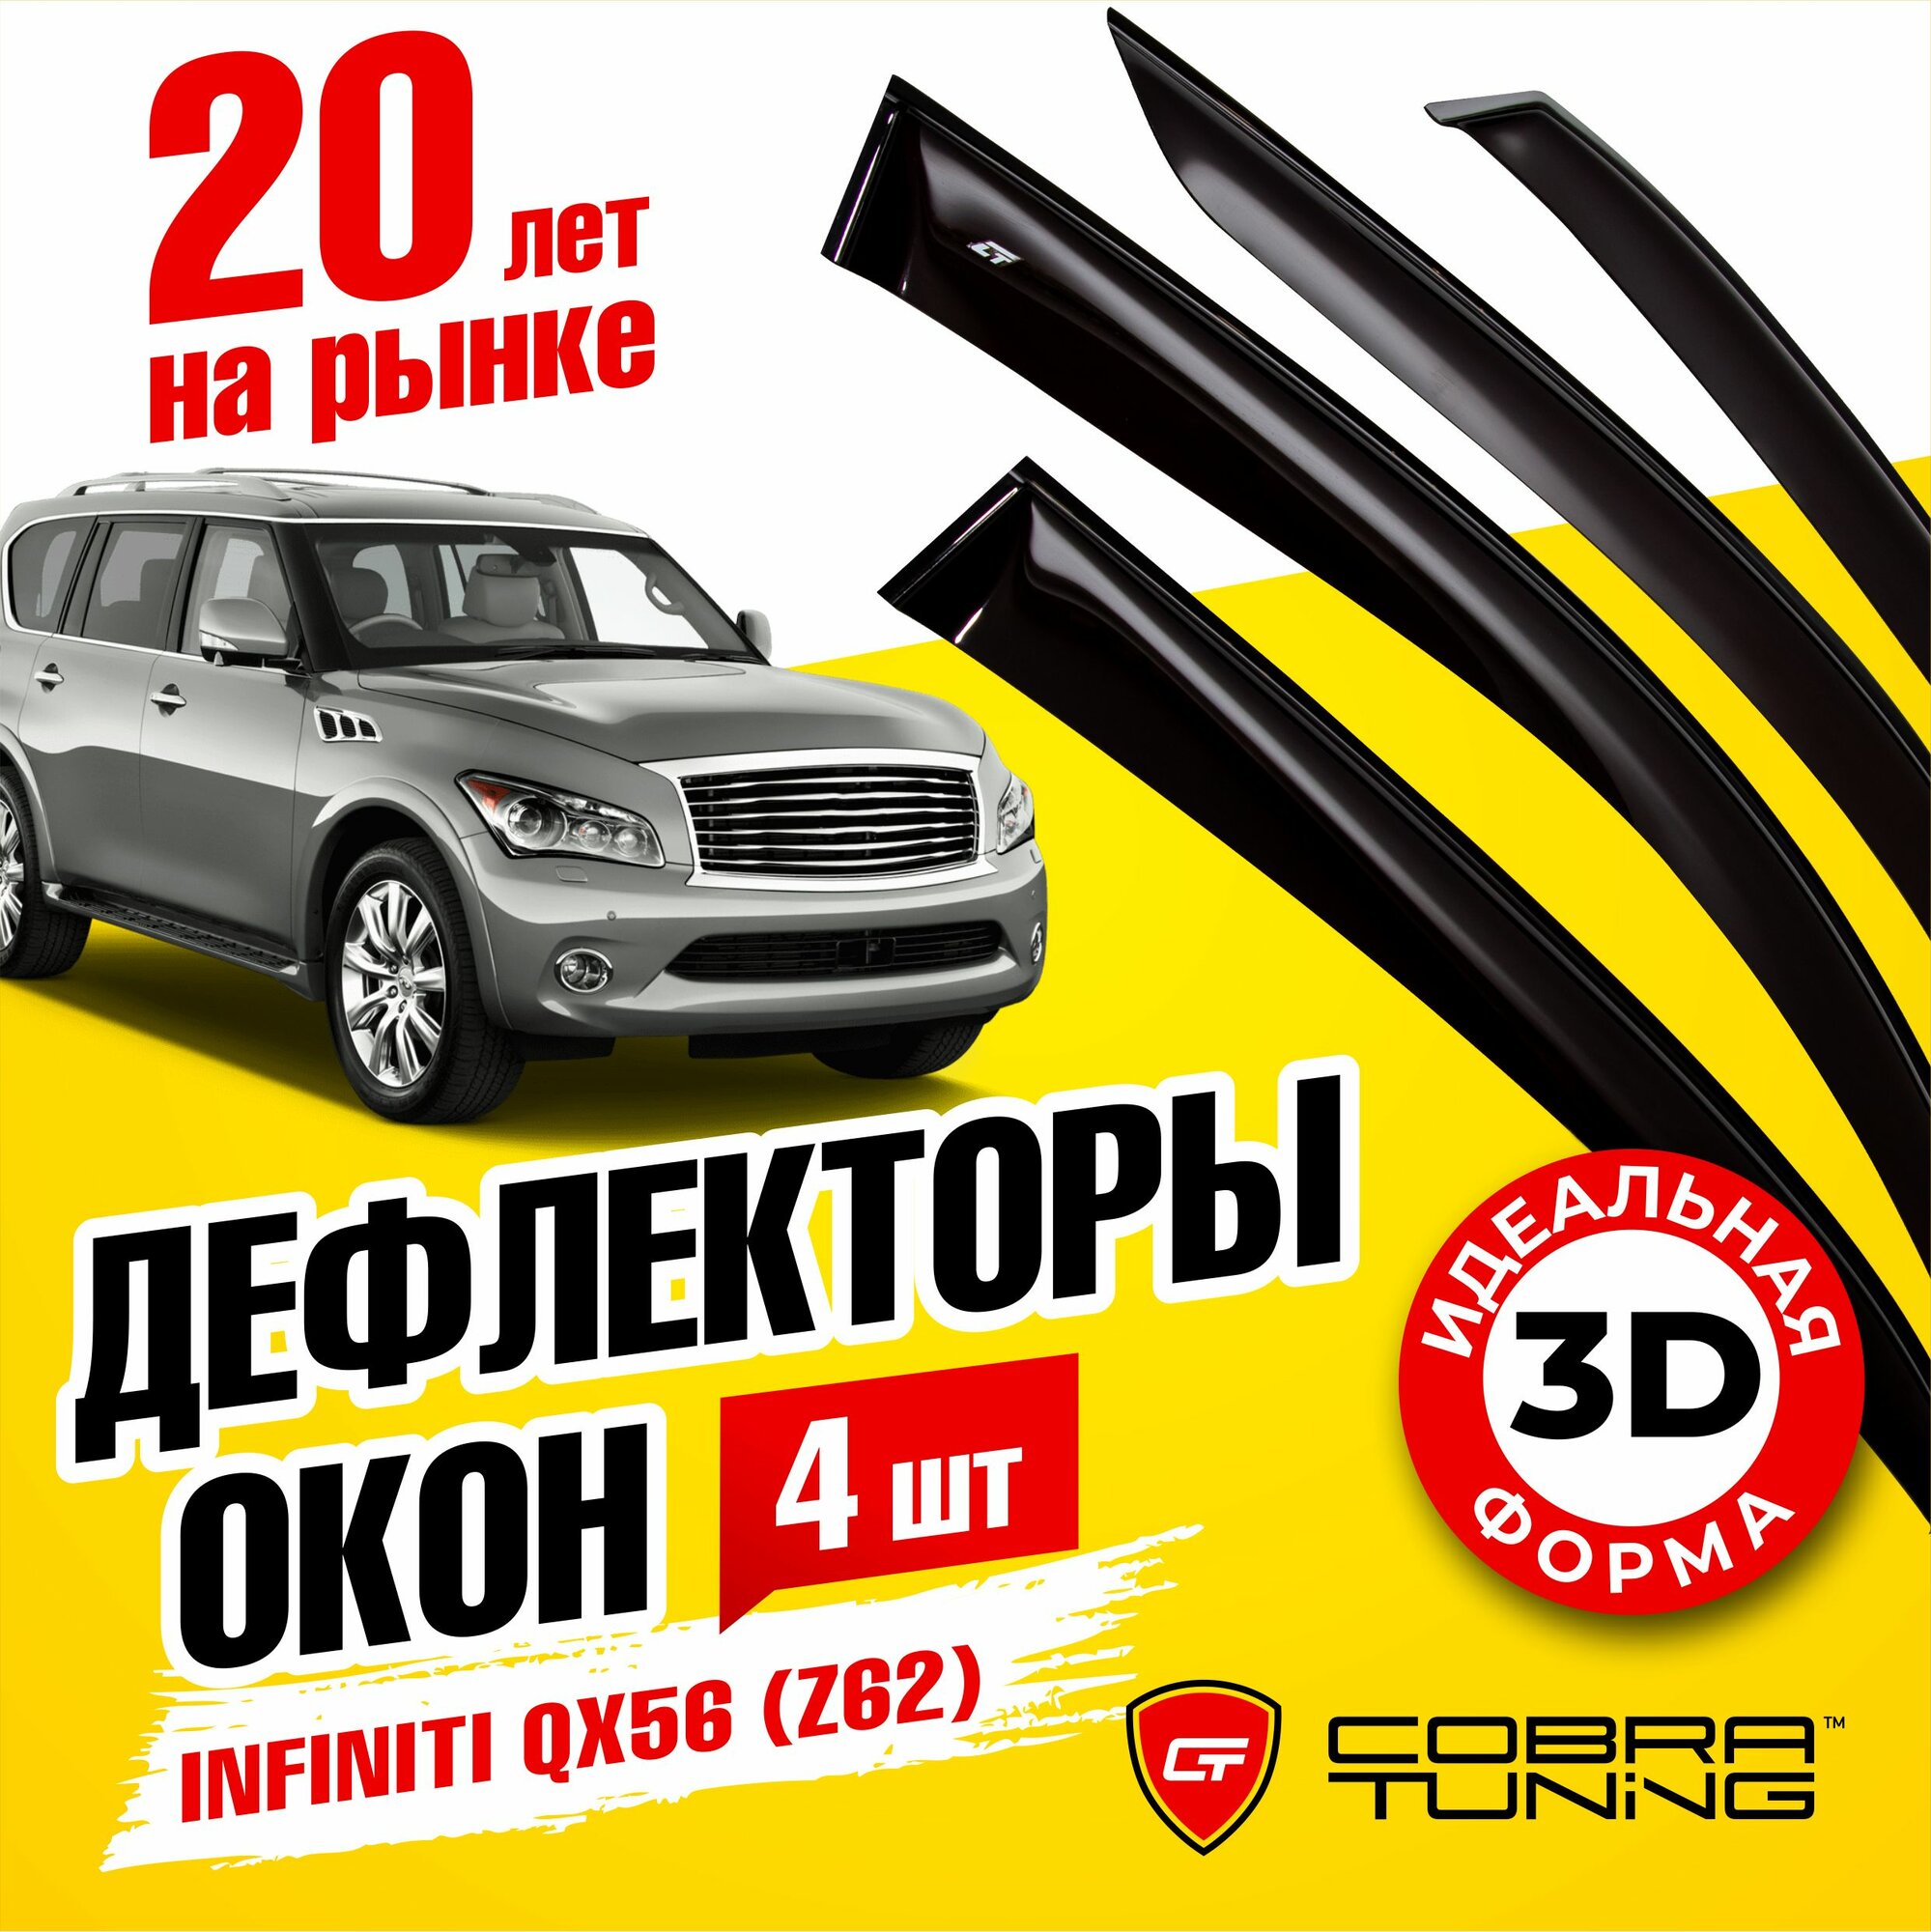 Дефлекторы боковых окон для Infiniti QX56 (Инфинити) (Z62) 2010-2013, ветровики на двери автомобиля, Cobra Tuning